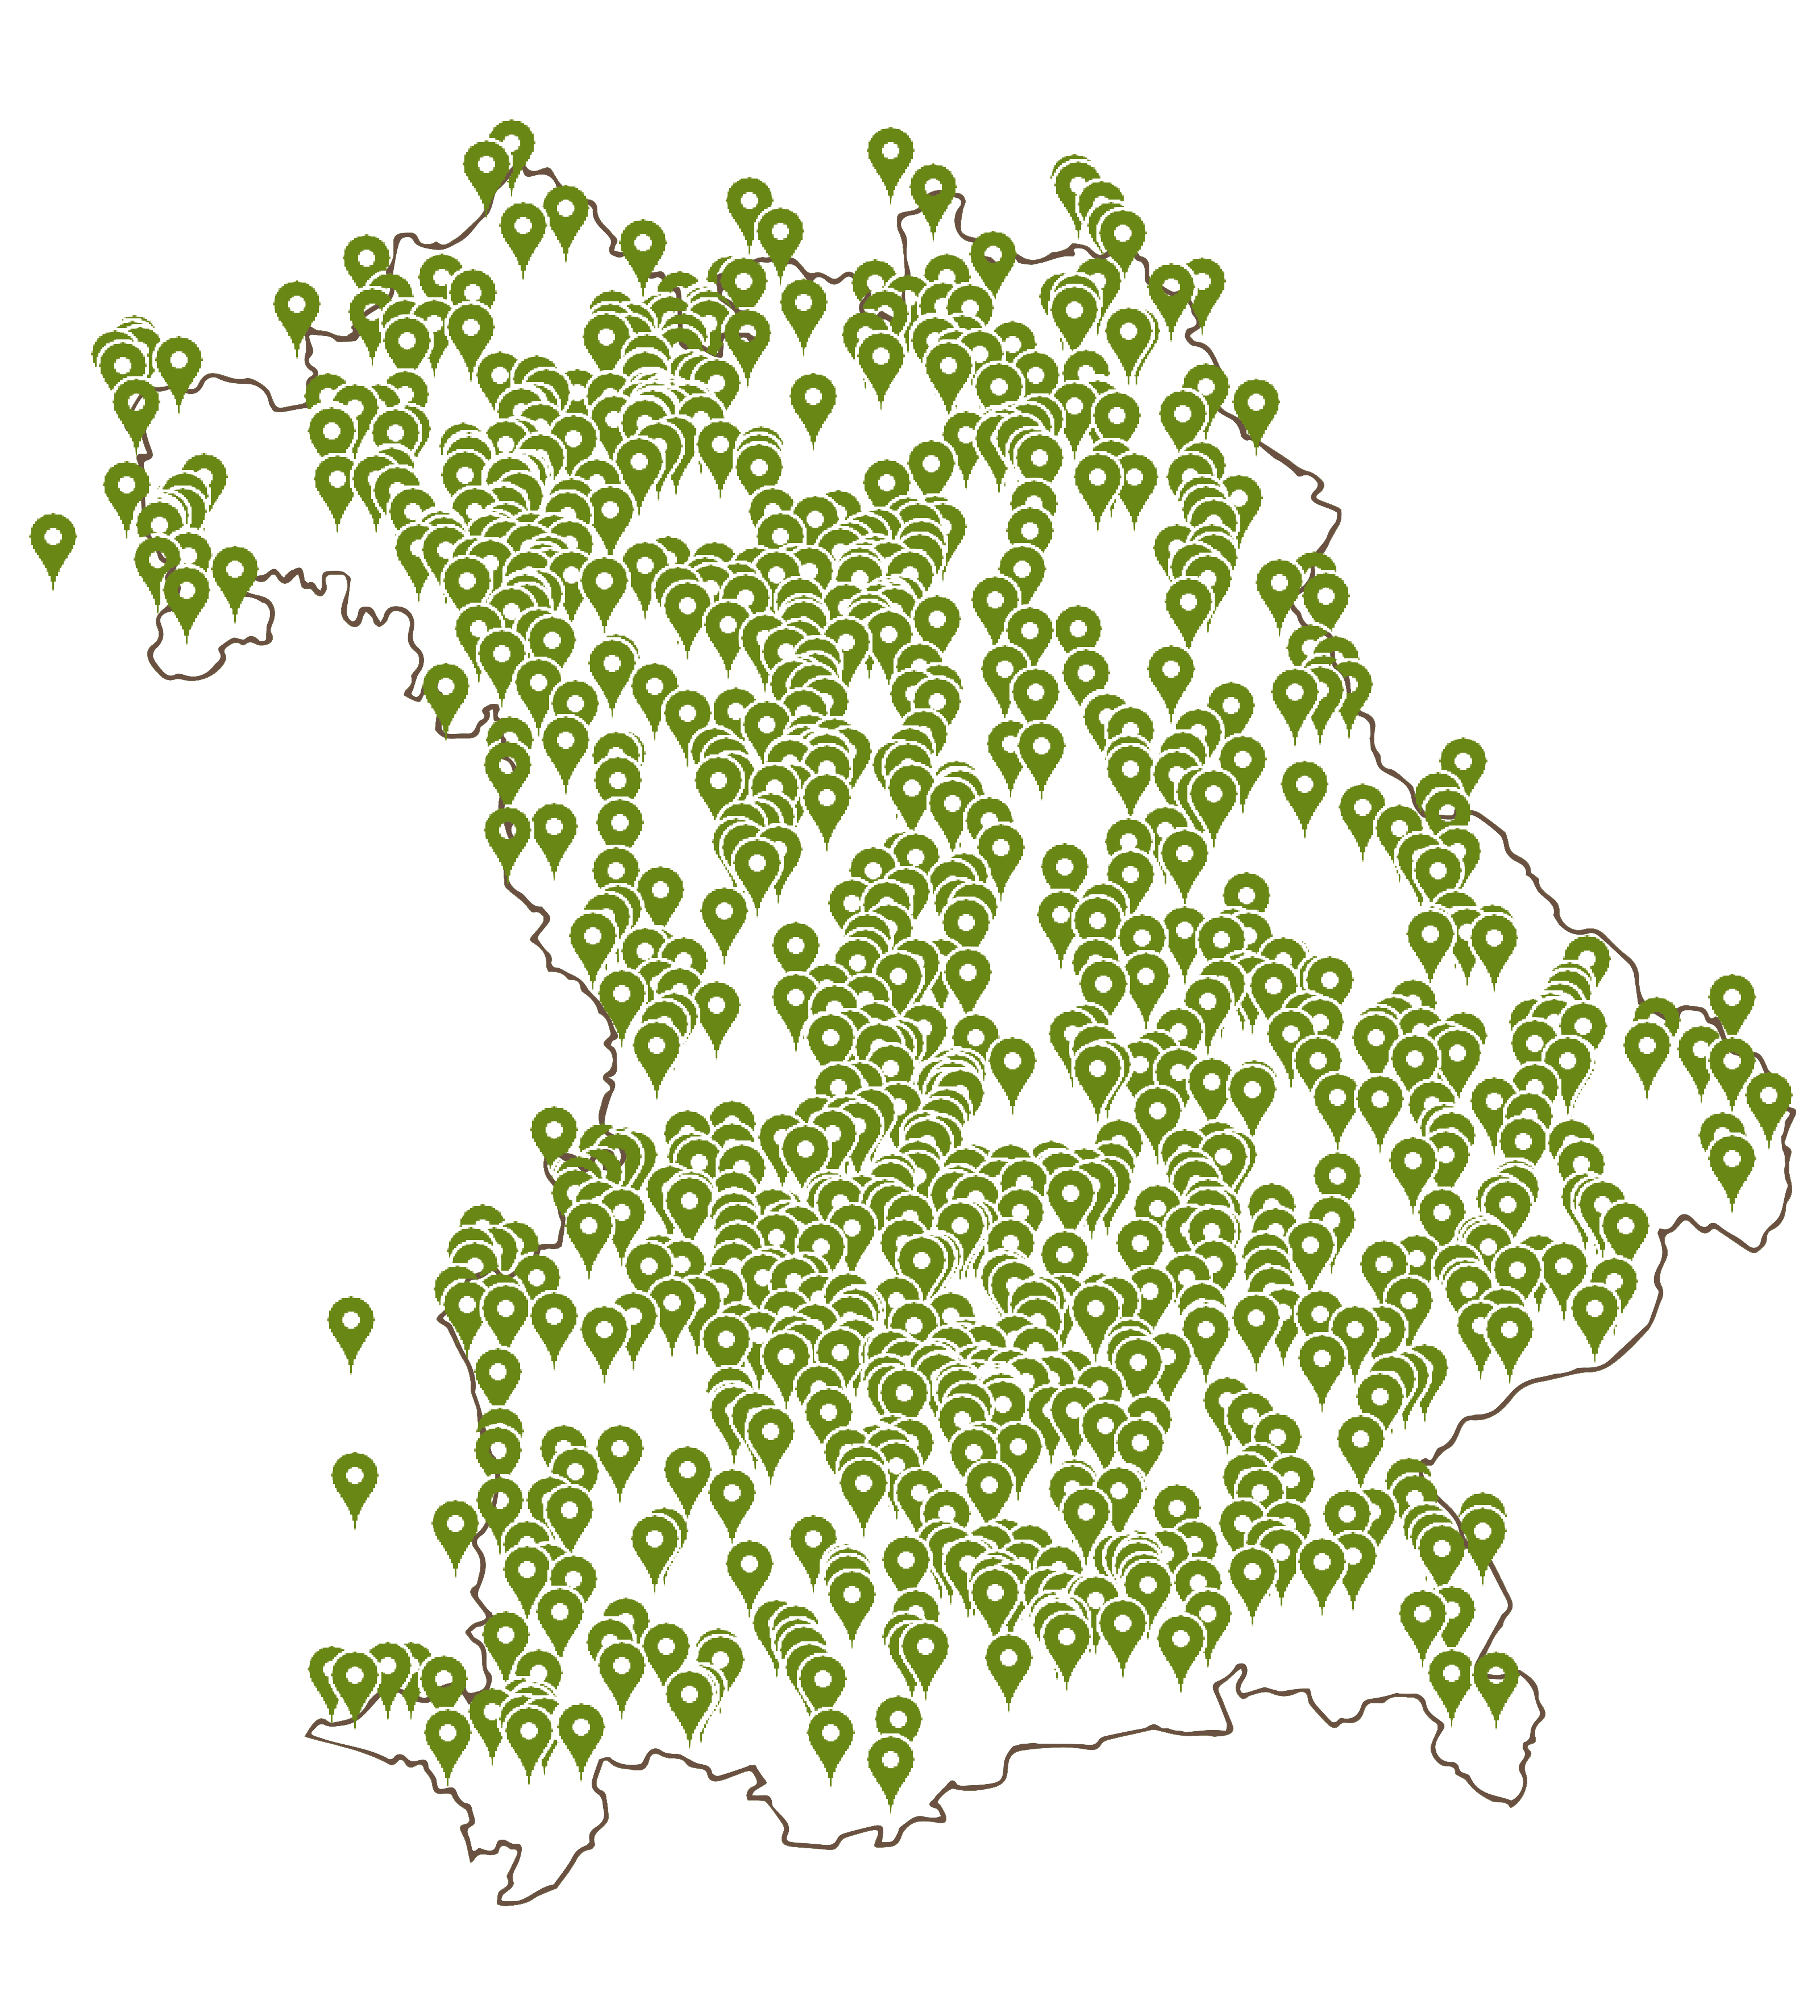 Landkarte von Bayern voller grüner Standortnadeln, die die Herkunft der Teilnehmer von Wirt sucht Bauer anzeigen.